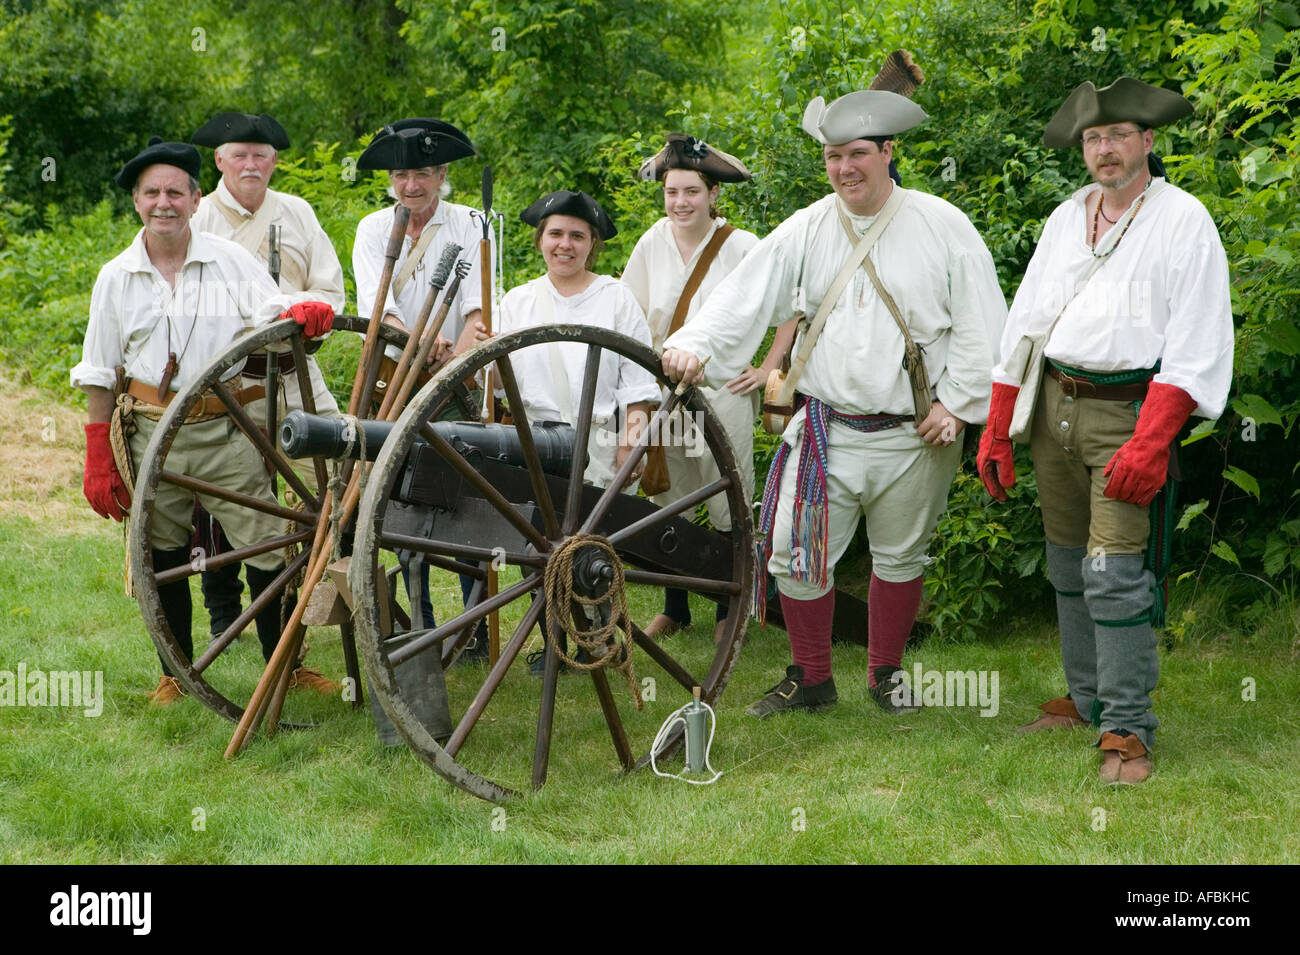 Kanone Artillerie Fort Ticonderoga NewYork jährliche Grand Encampment Reenactment der Entscheidungsschlacht in Französisch-Inder-Krieg Stockfoto